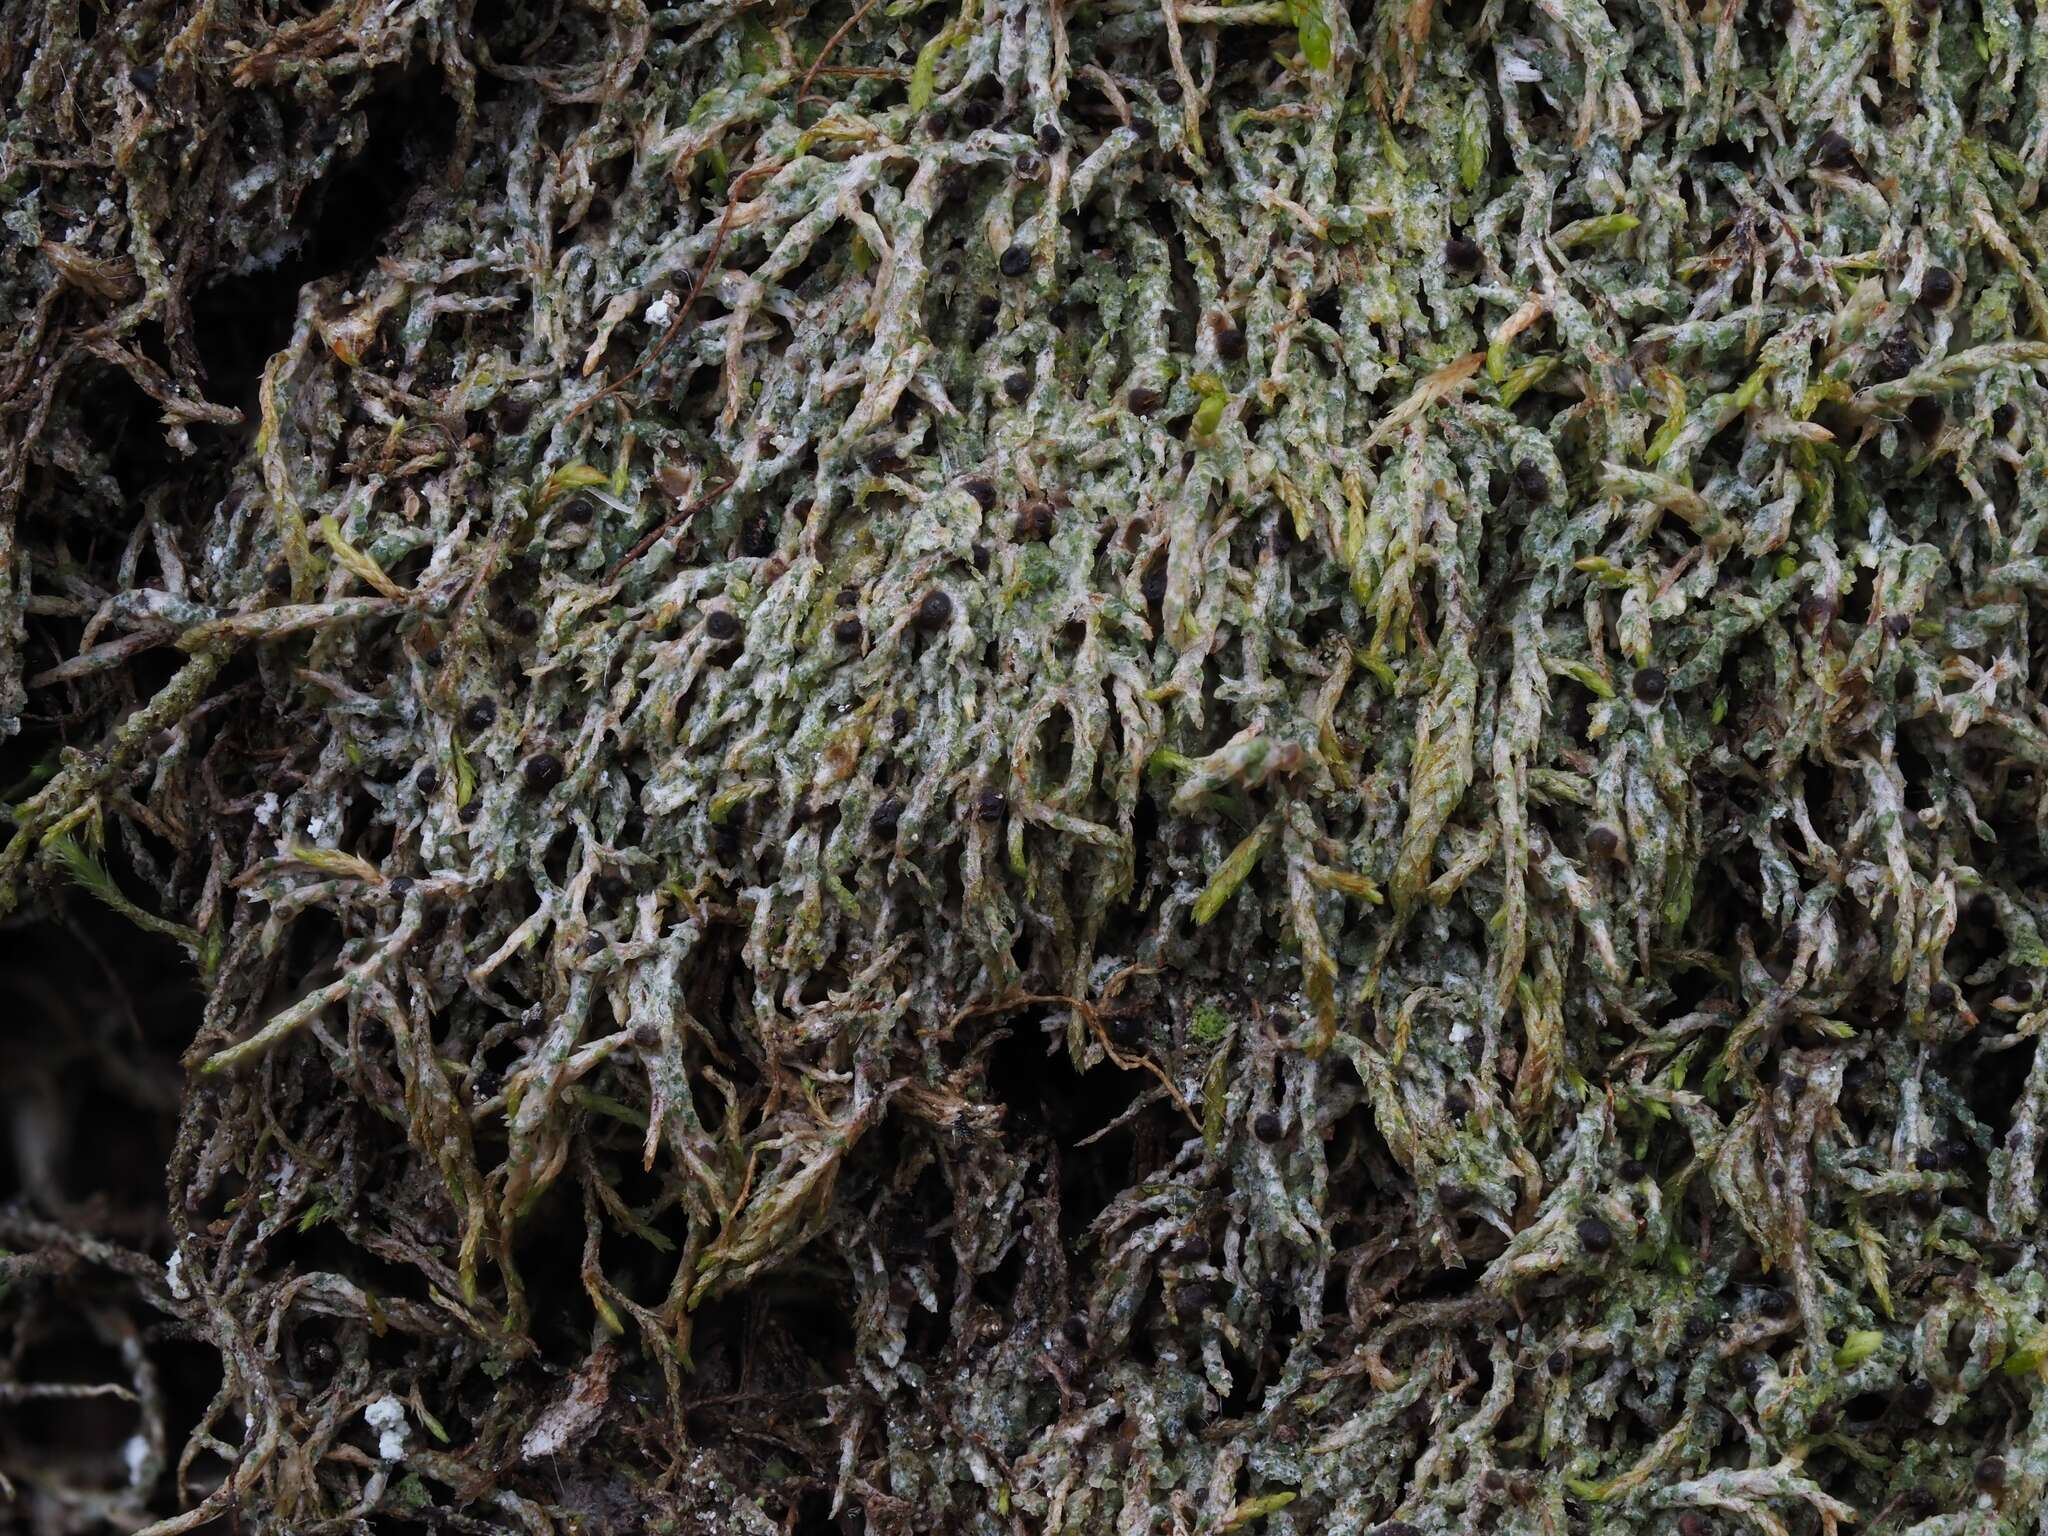 Image of thelenella lichen